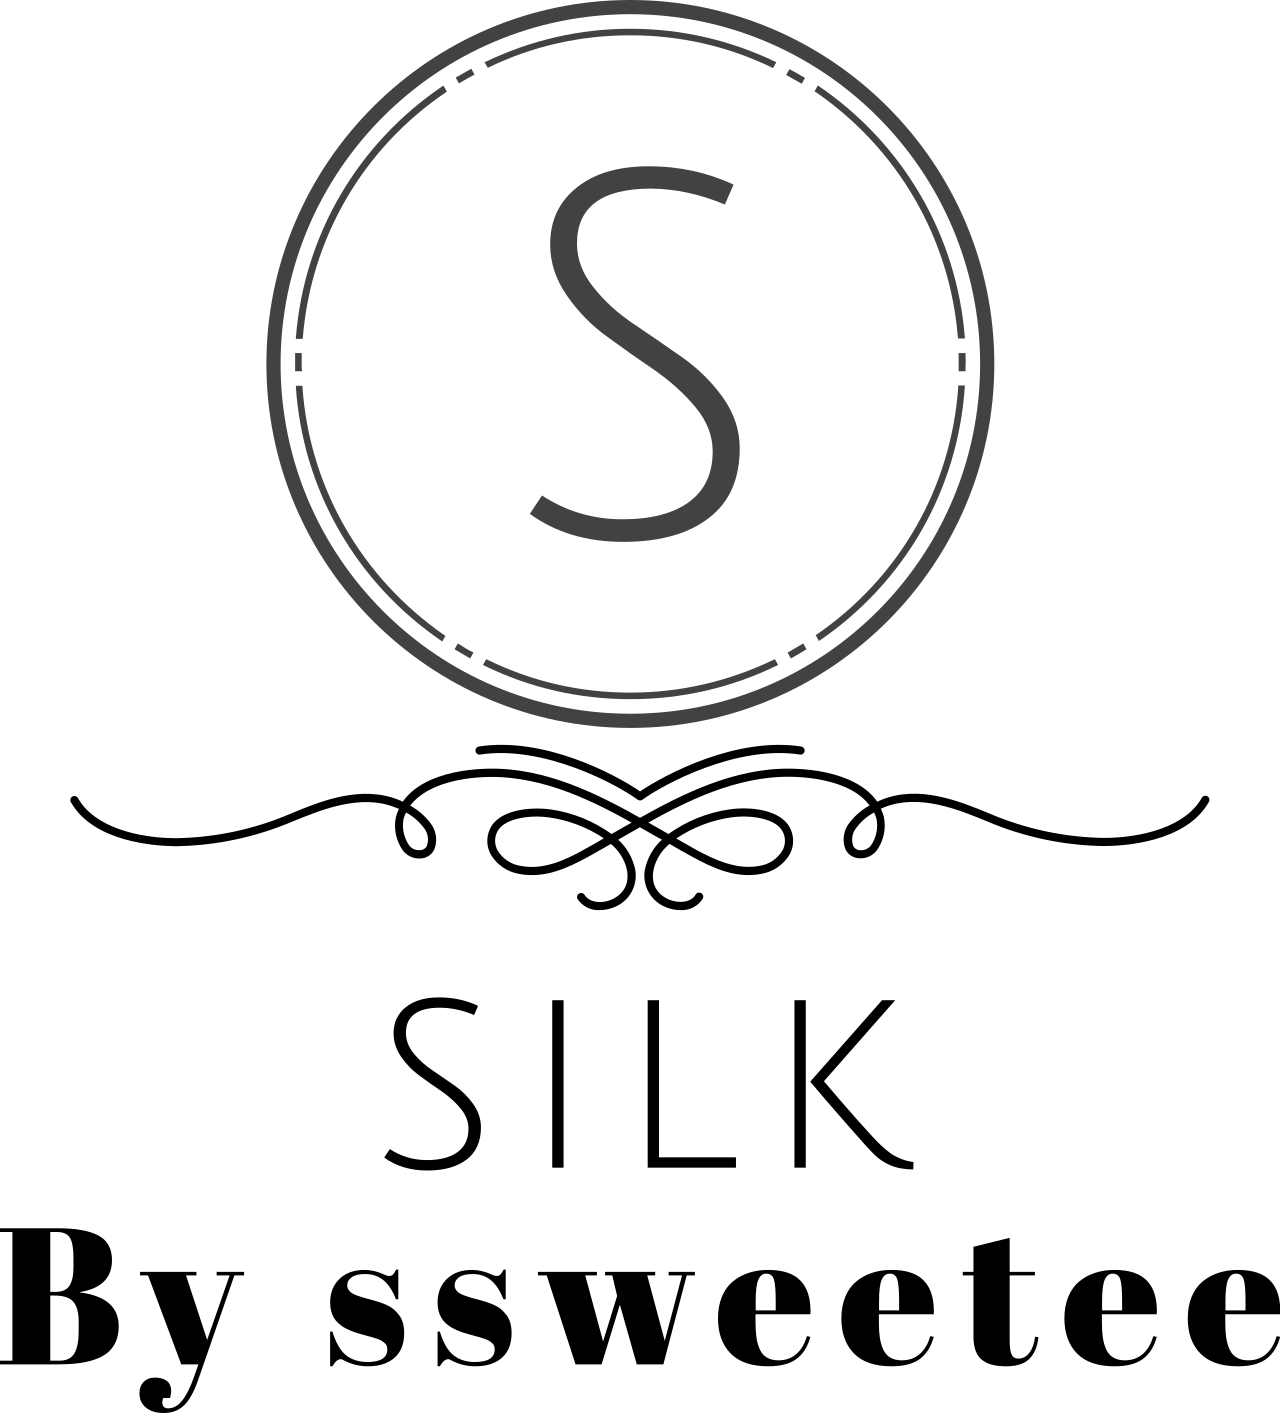 Silk's logo